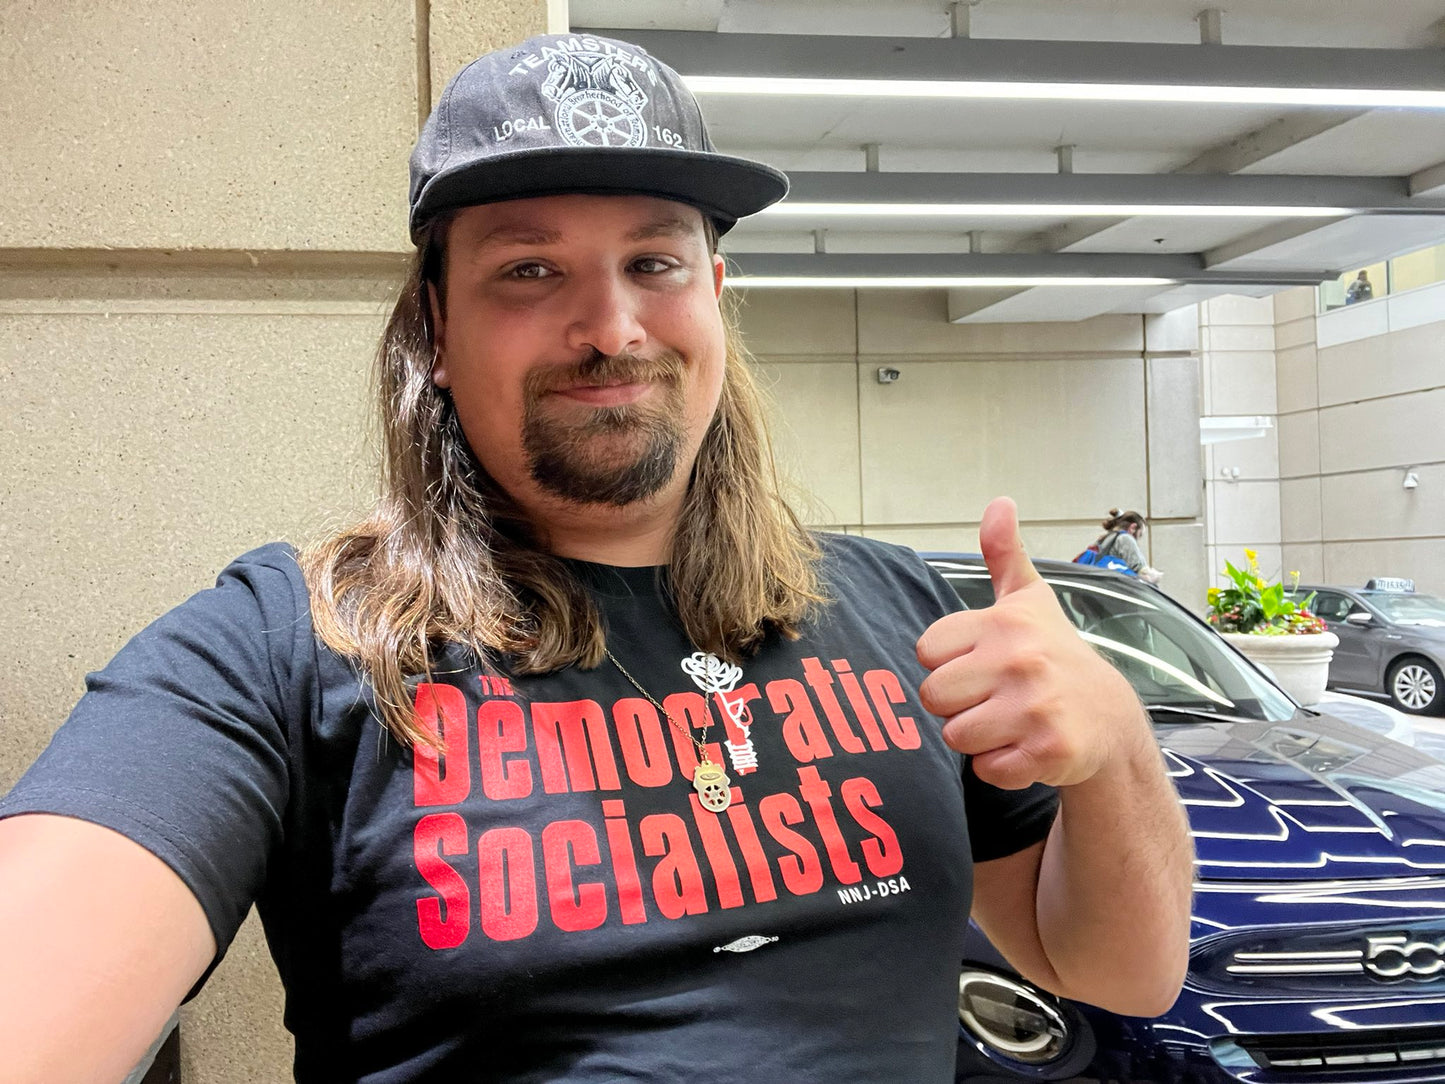 Sopranos Socialist